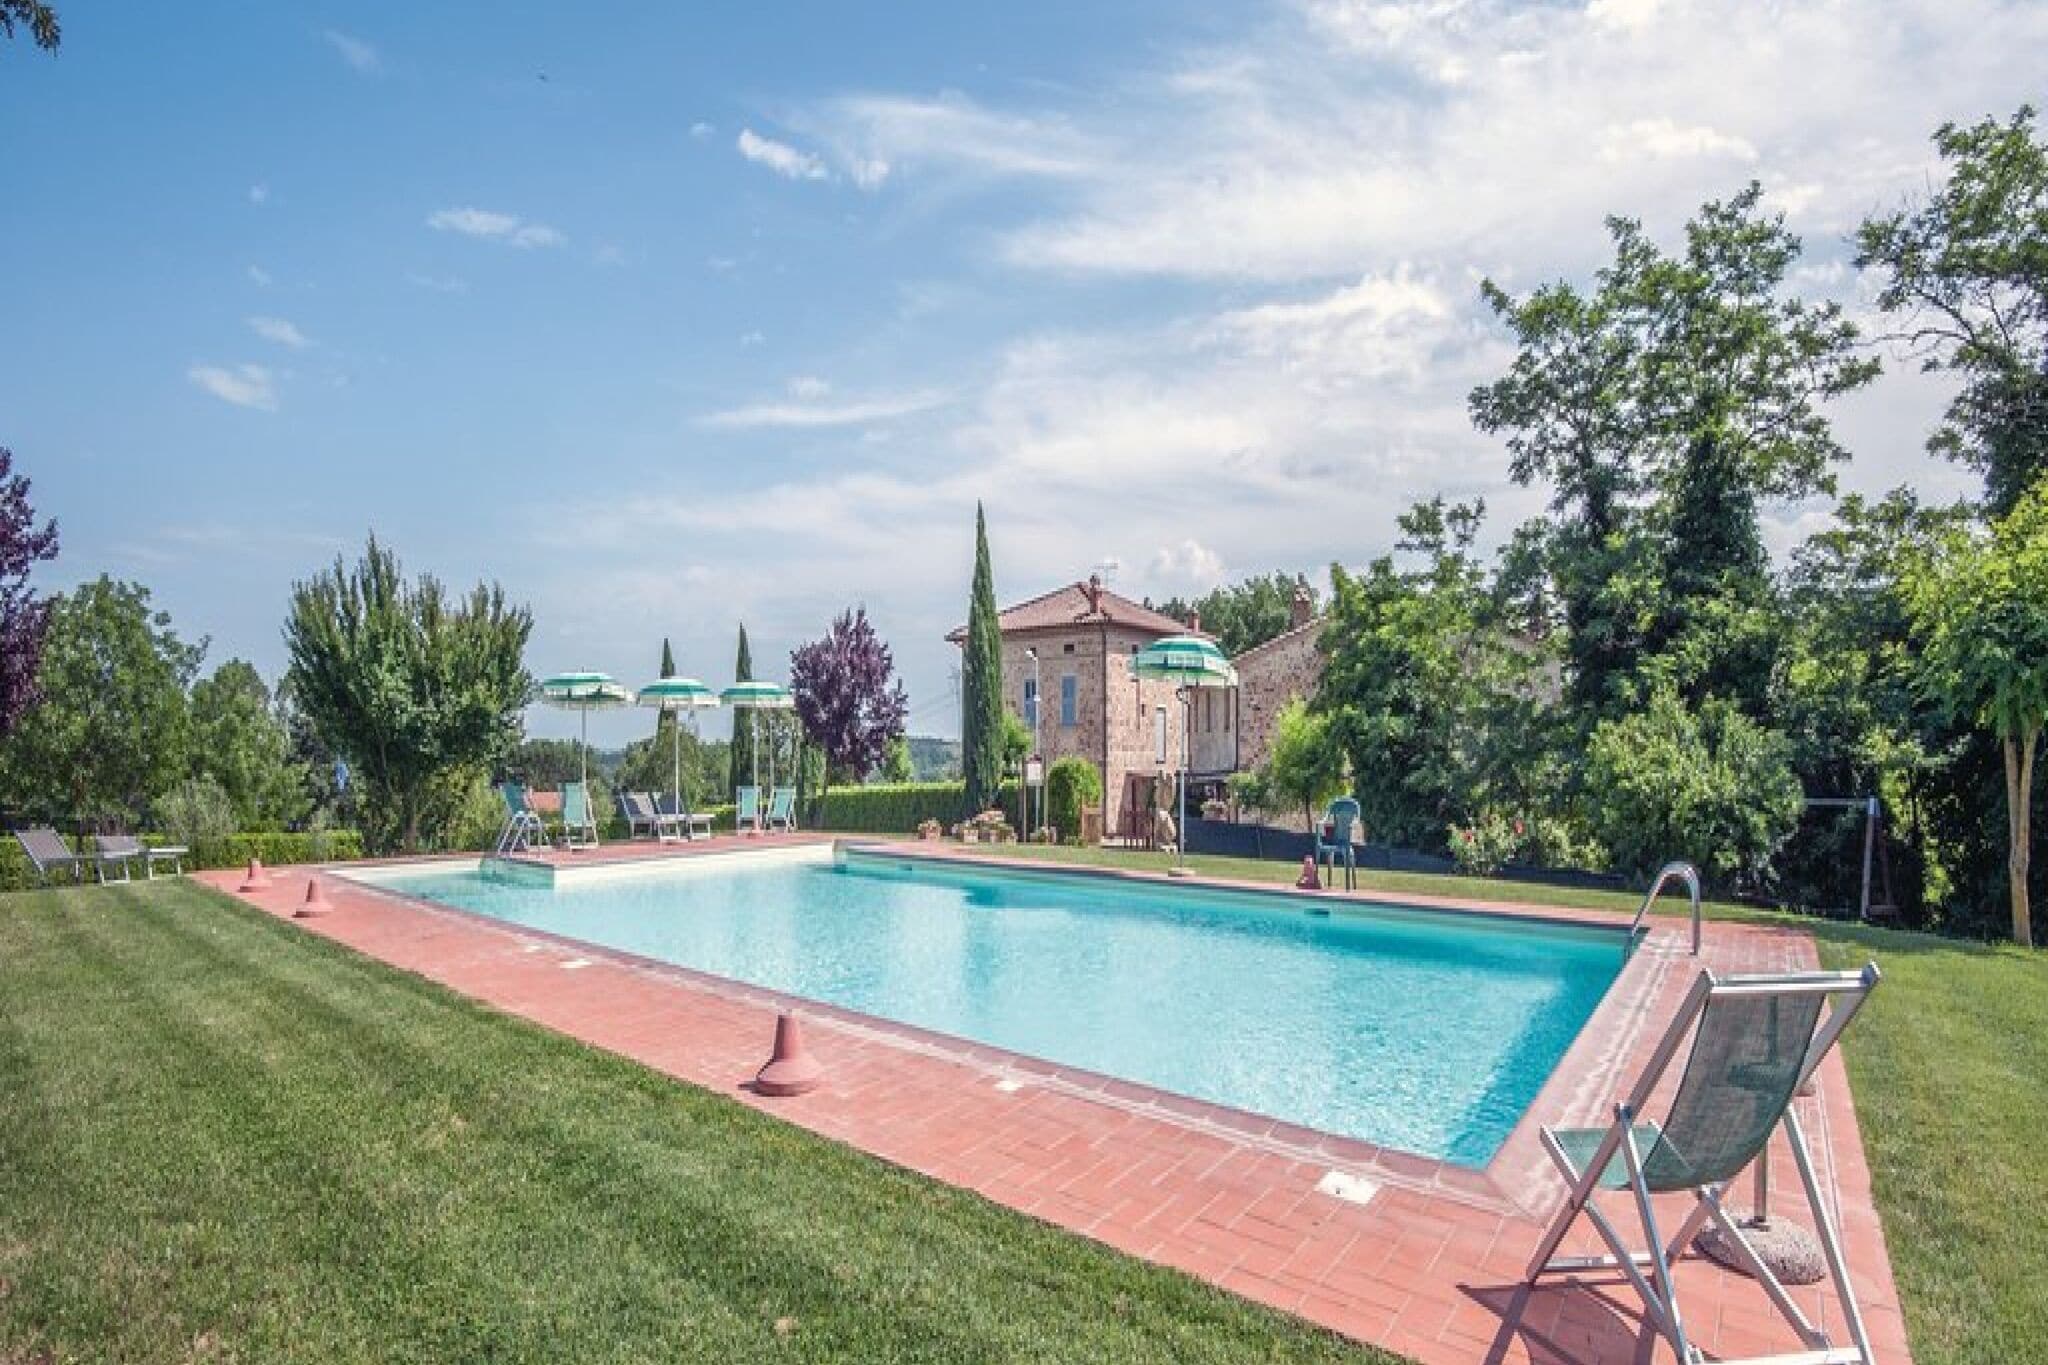 In Wohnungen aufgeteiltes Ferienhaus in der Toskana mit Swimmingpool